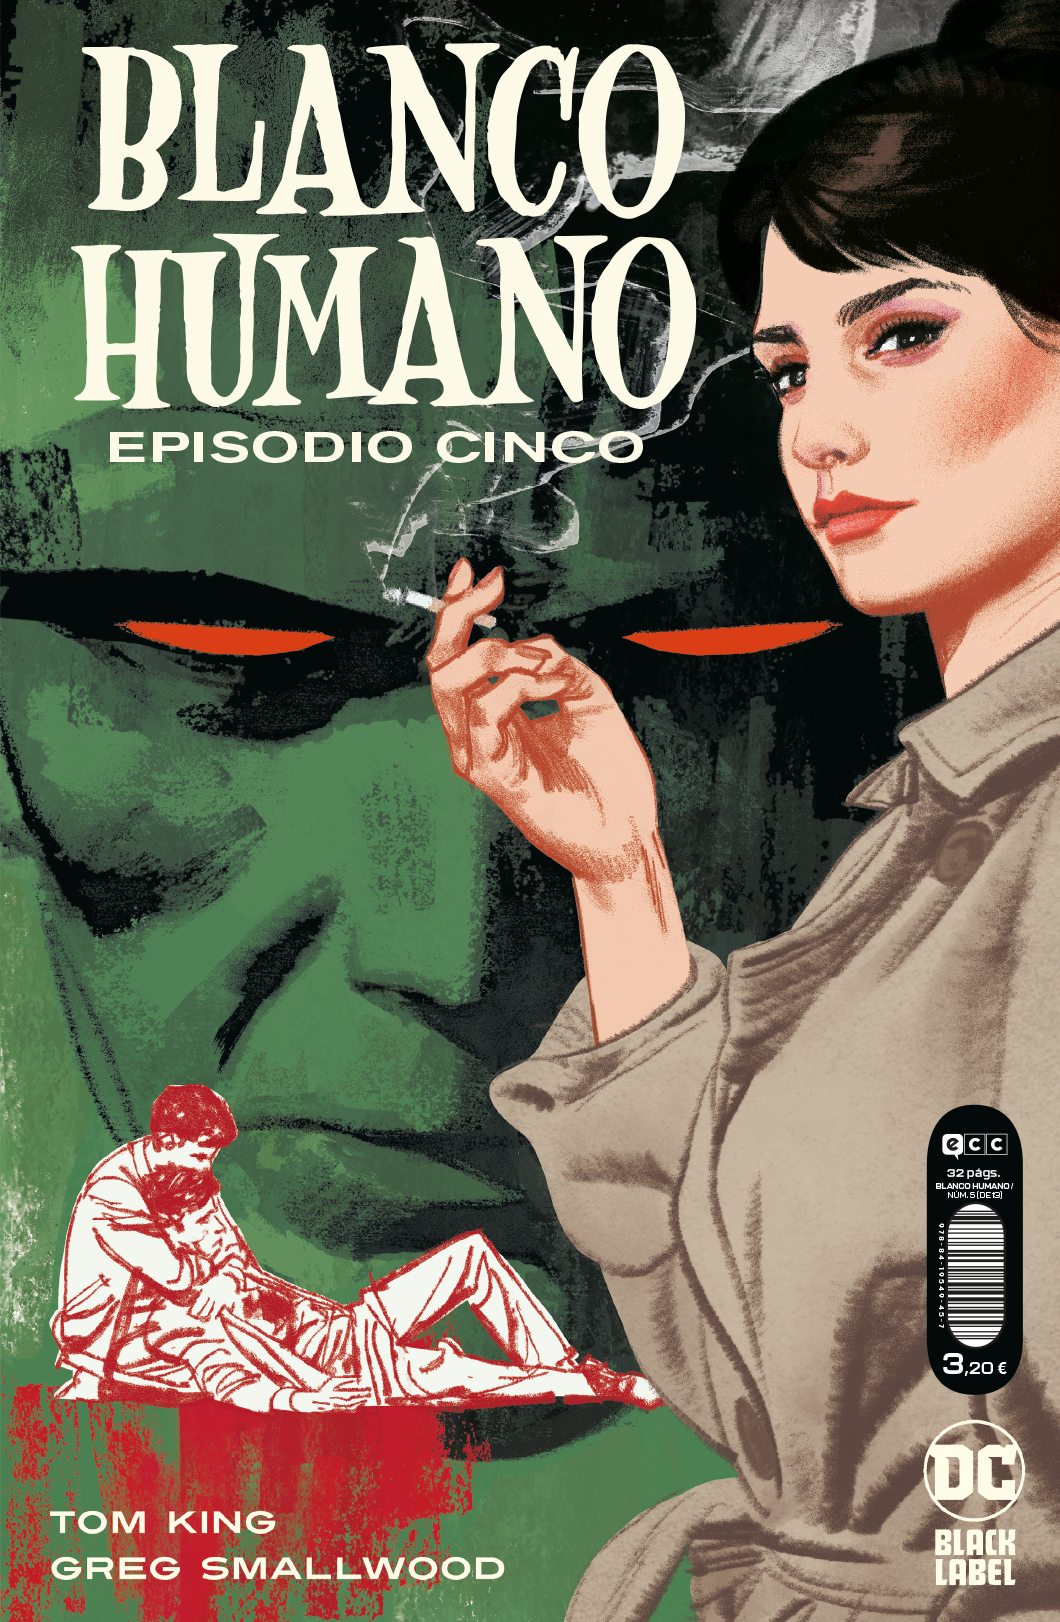 BLANCO HUMANO #5 (de 13)